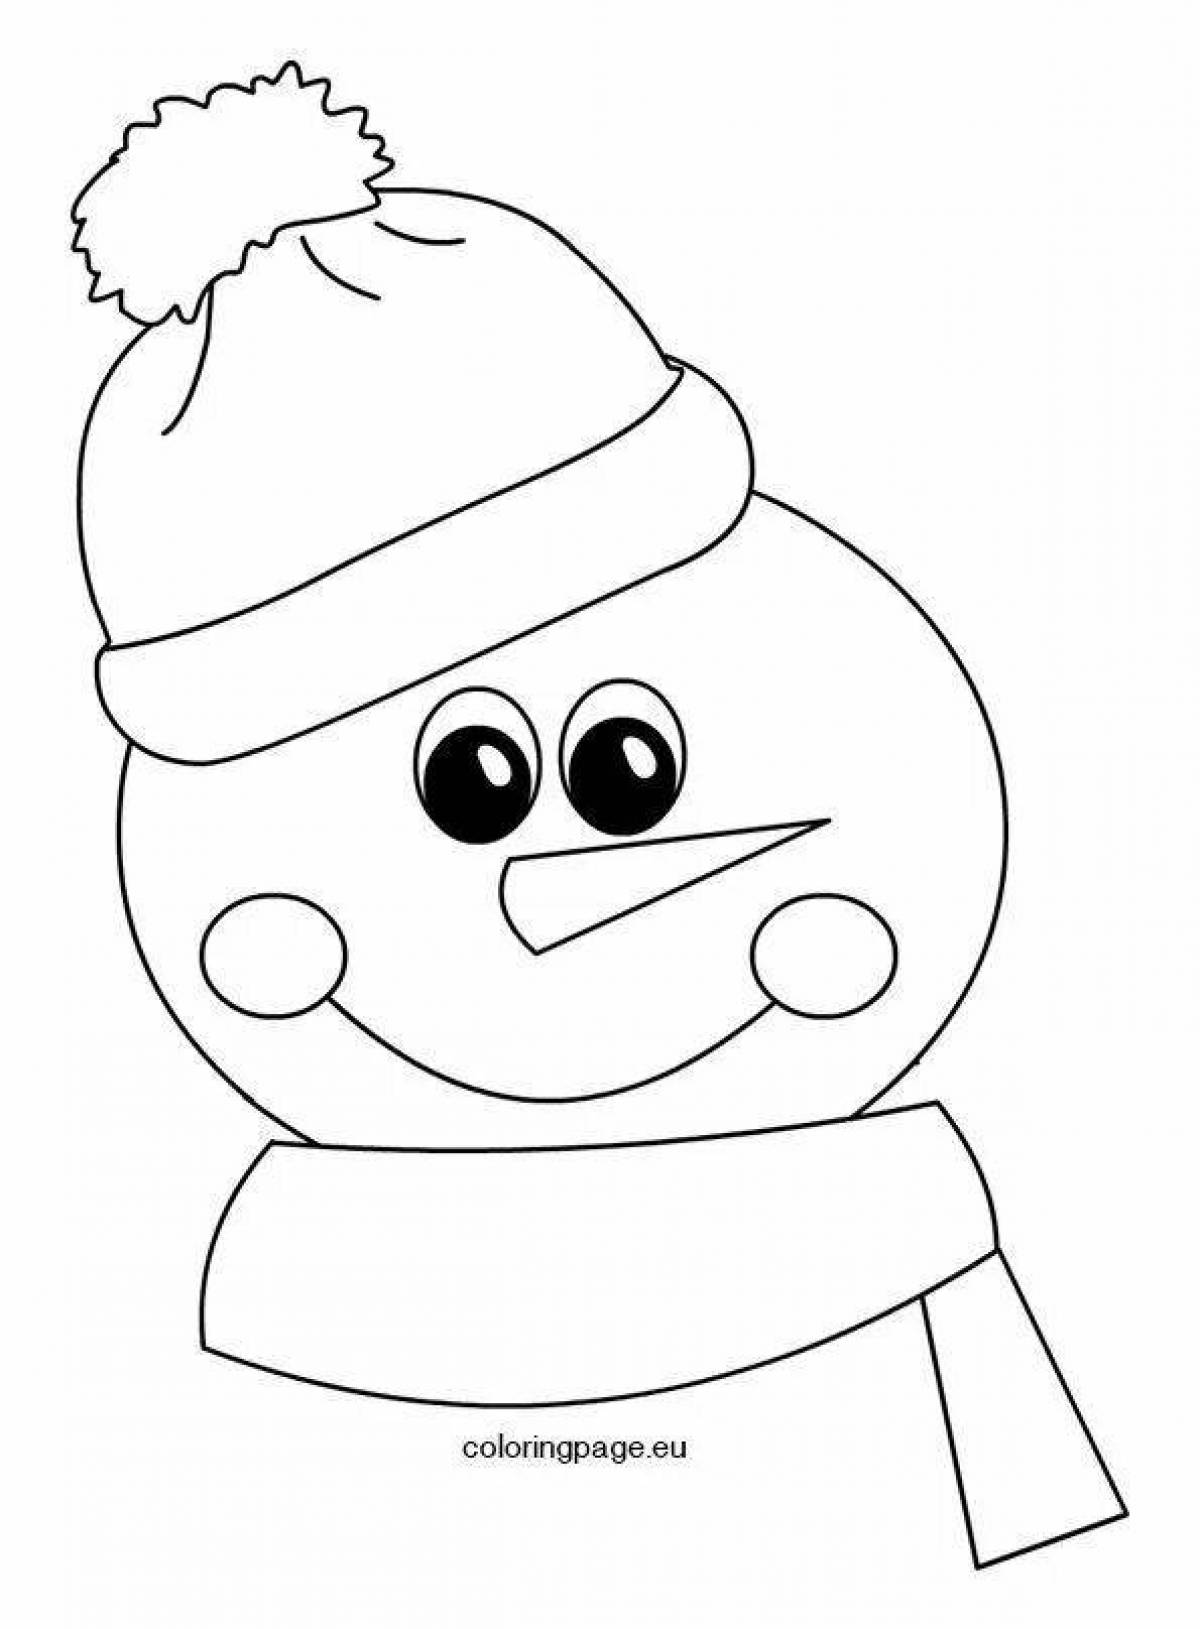 Ликующие снеговики в шапках и шарфах в горошек